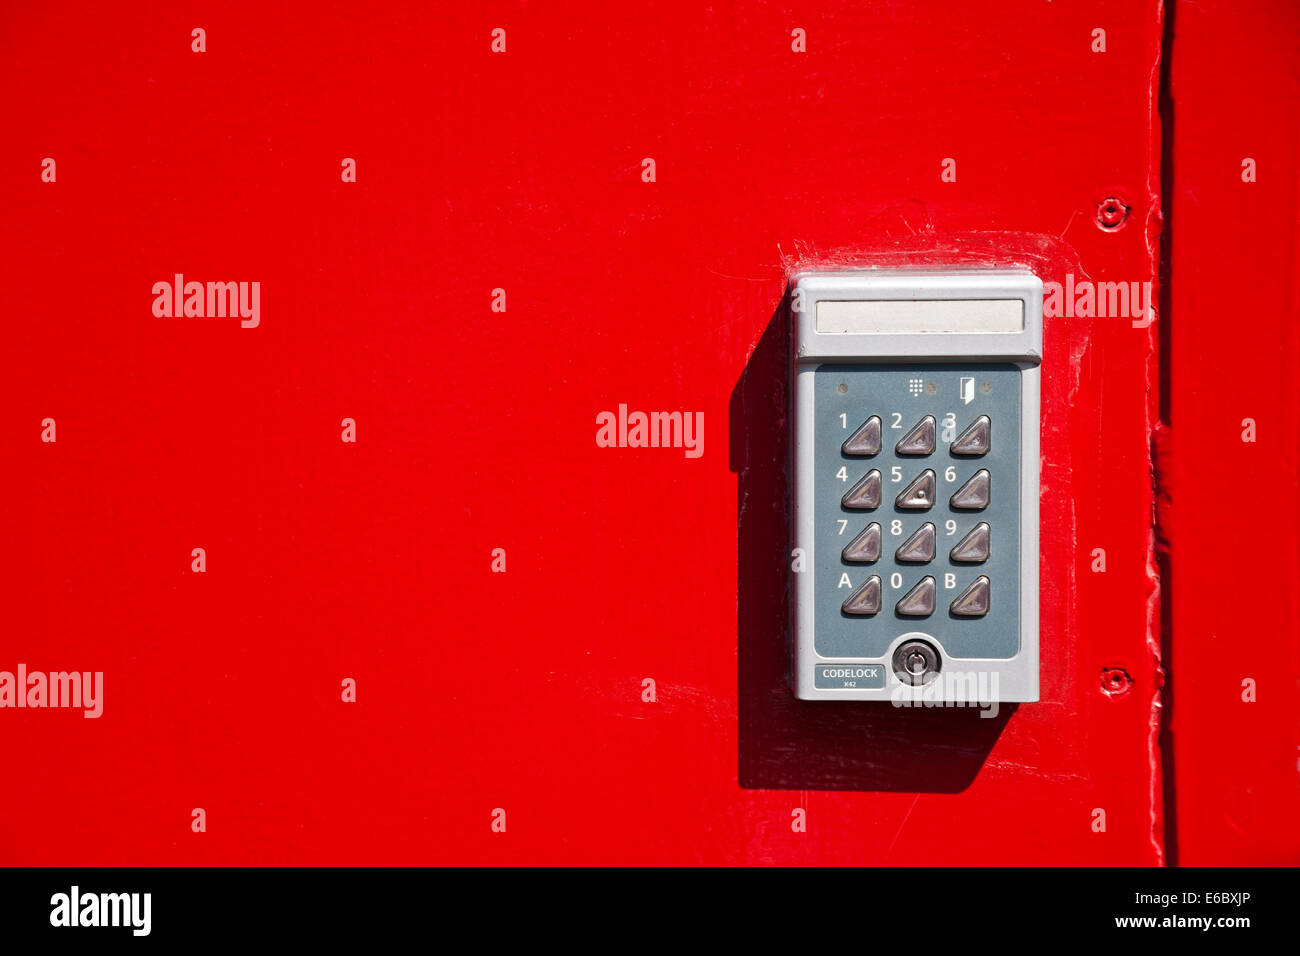 Gros plan de la porte en métal rouge vif avec combinaison électronique Entrée clavier verrouillage Angleterre Royaume-Uni Royaume-Uni Grande Grande-Bretagne Banque D'Images